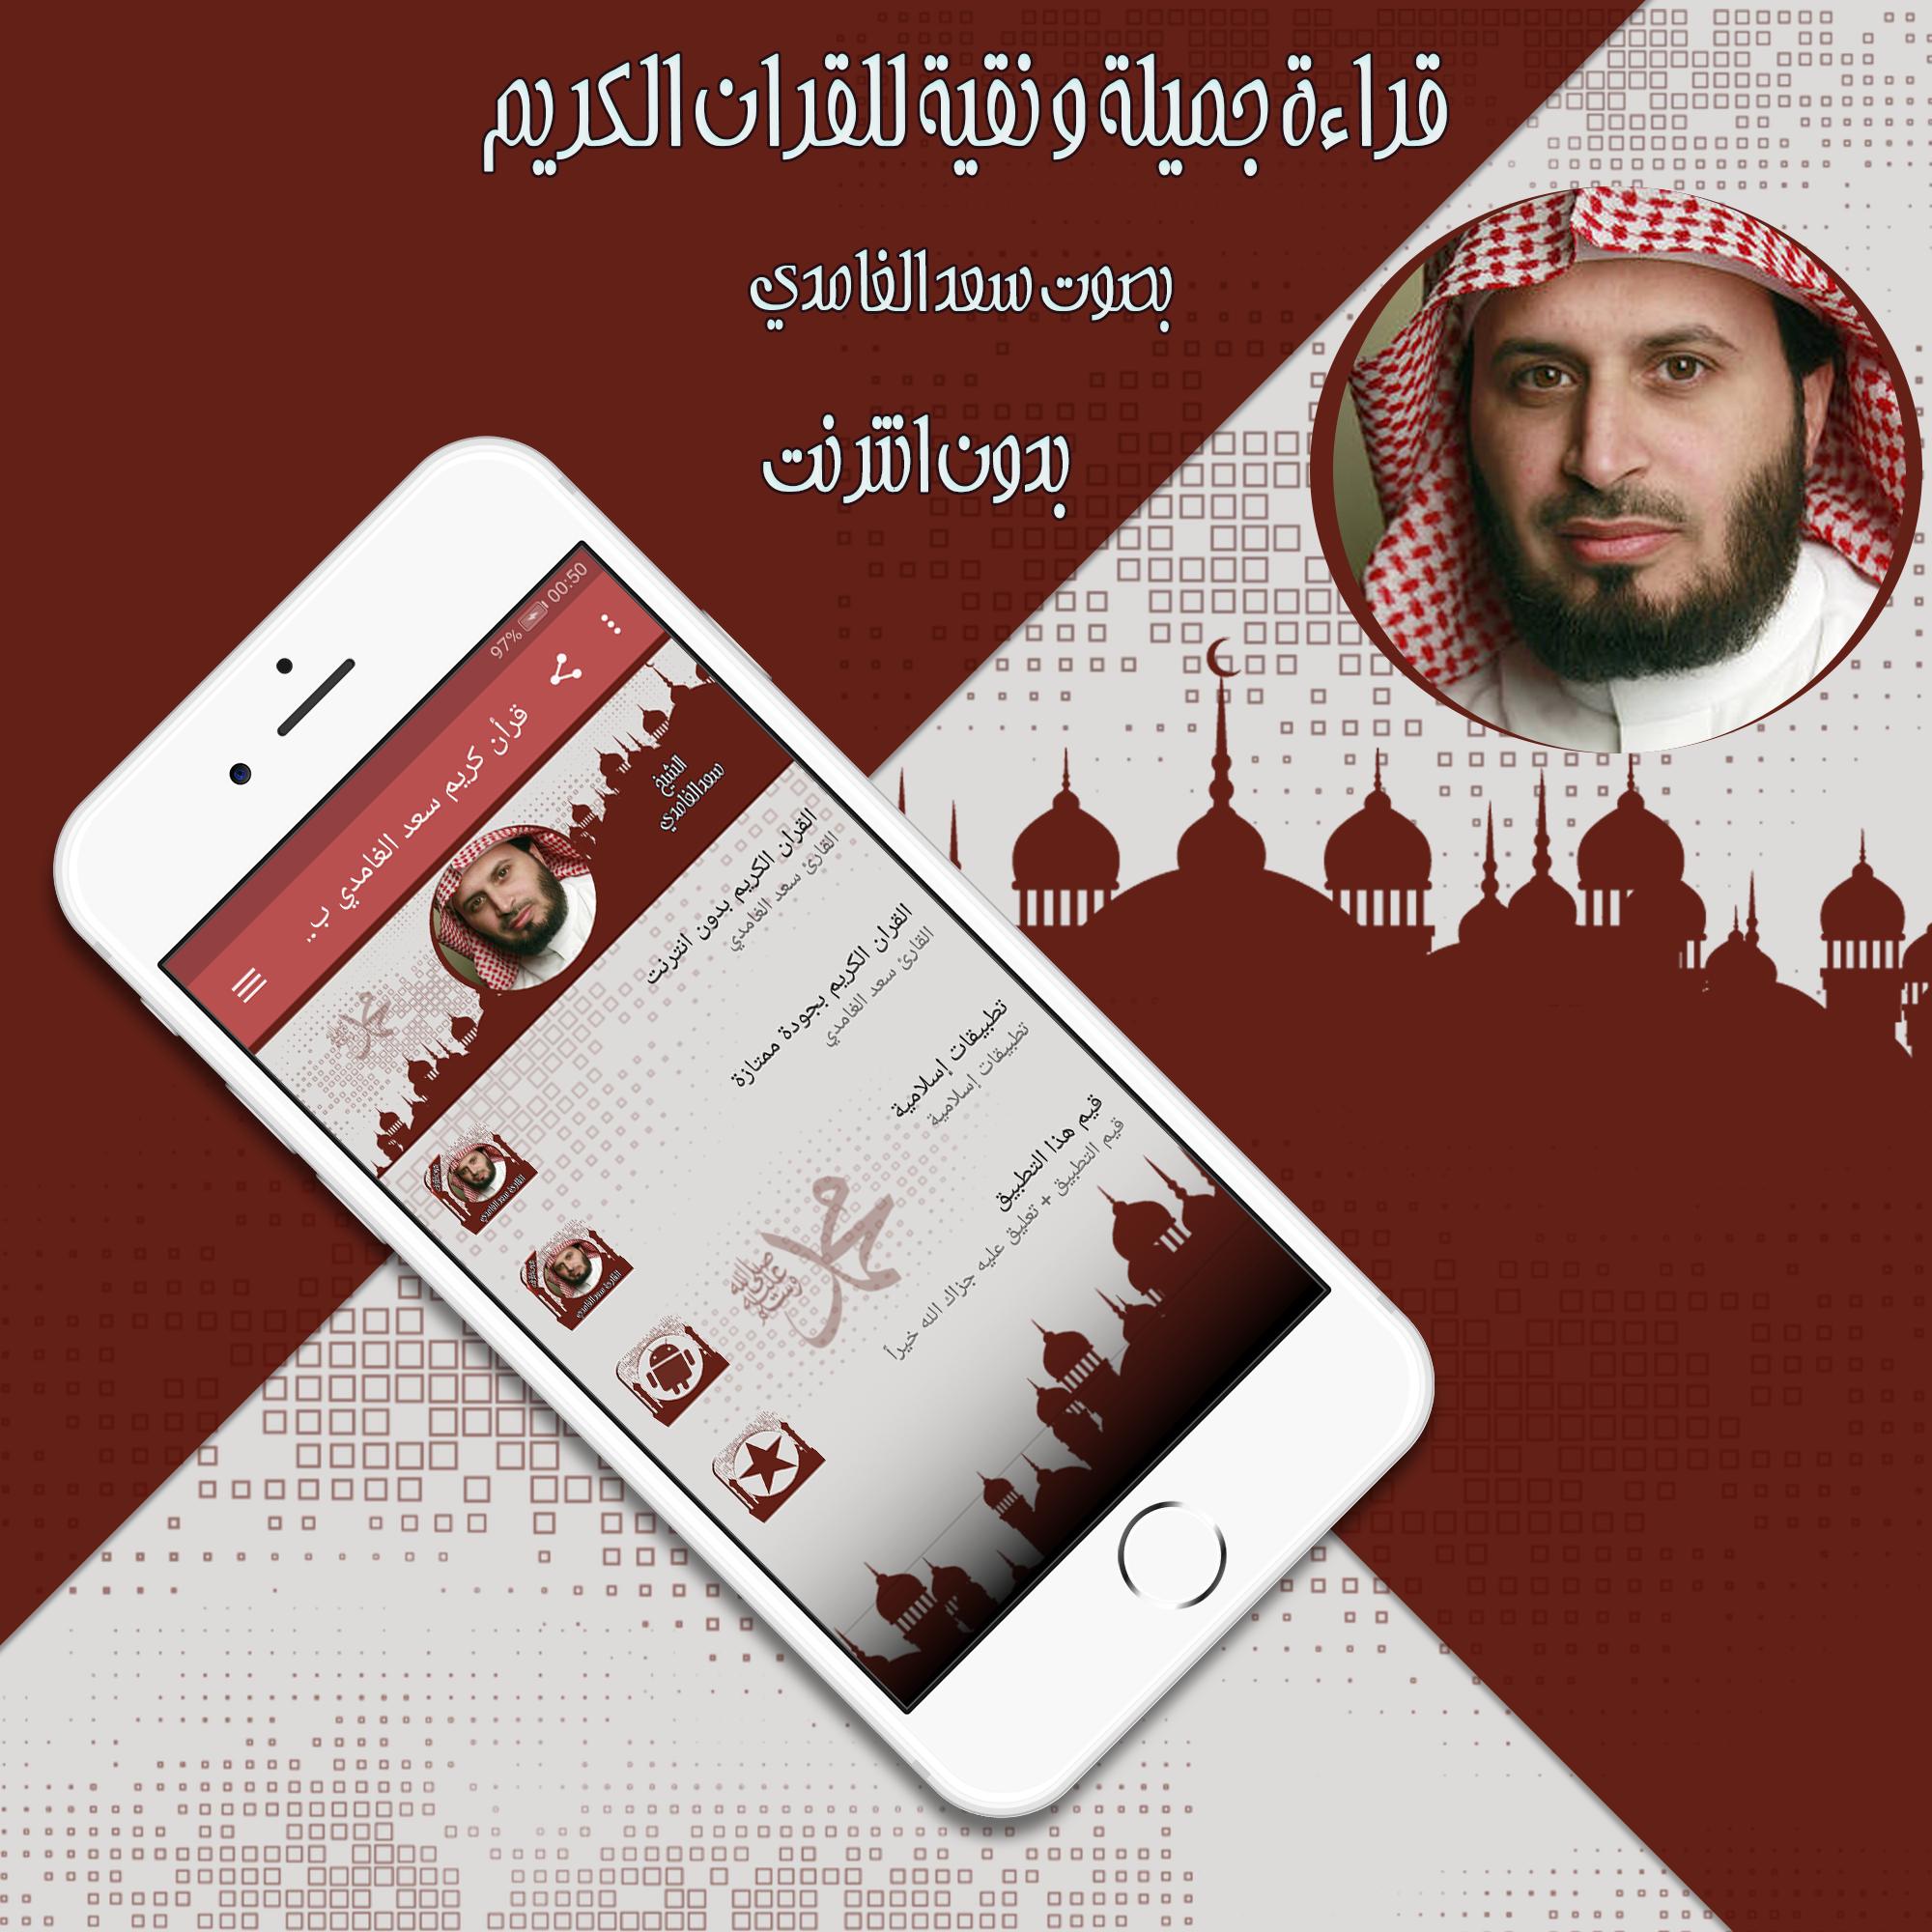 قرأن كريم سعد الغامدي بدون نت for Android - APK Download